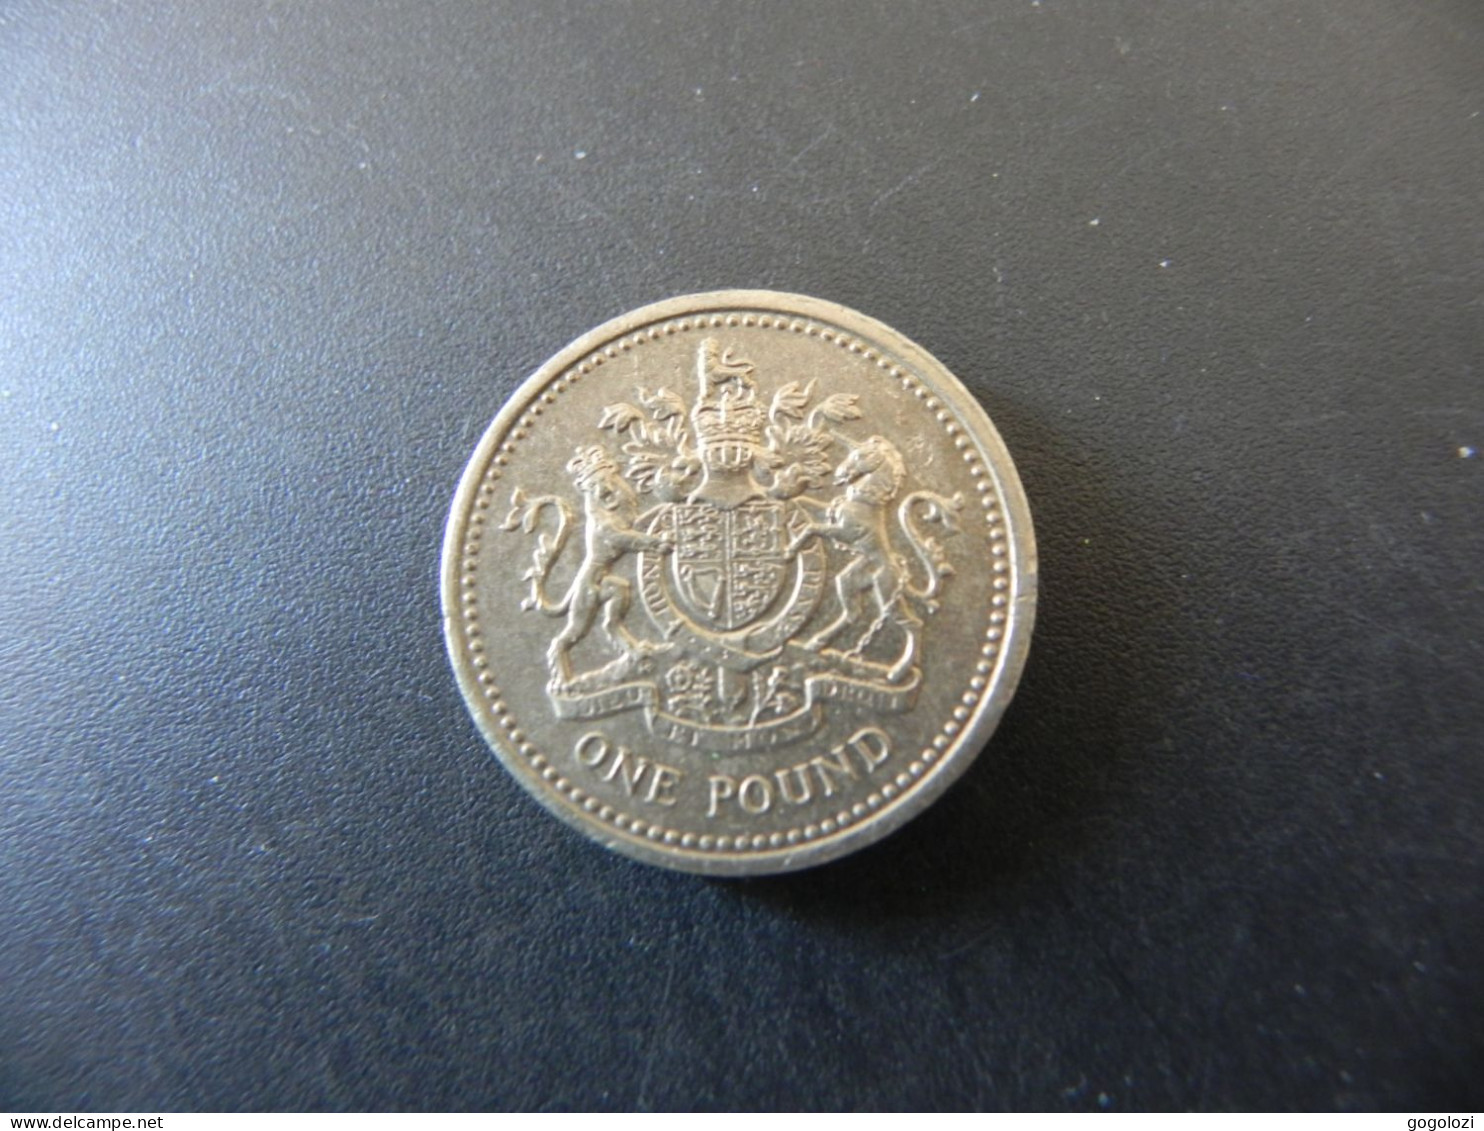 Great Britain 1 Pound 1983 - 1 Pound